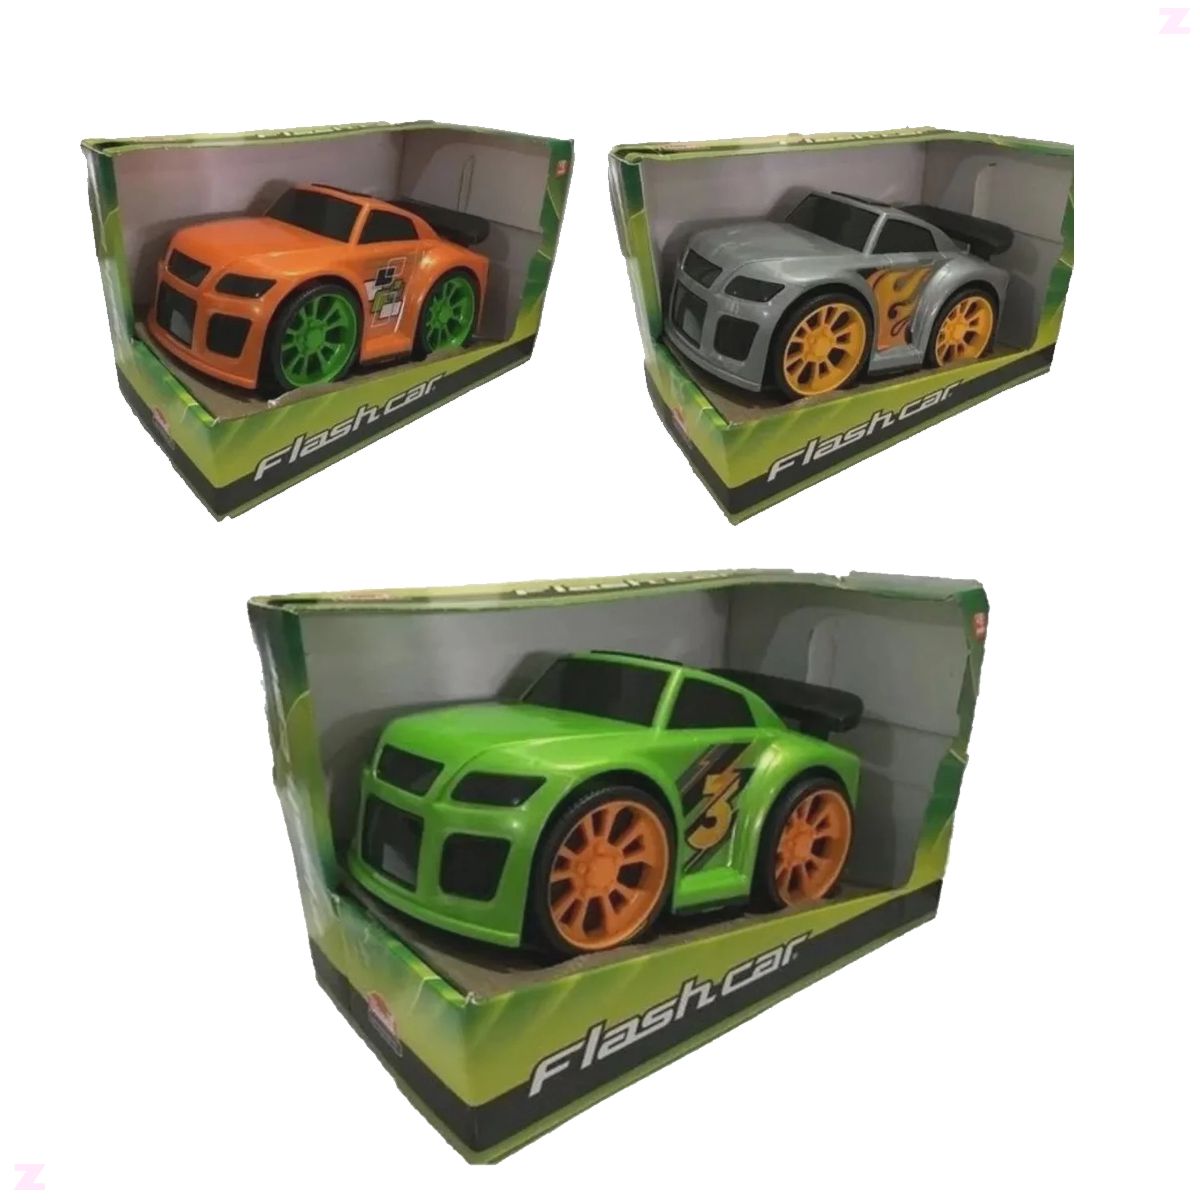 Brinquedo Infantil Caminhão Miniatura Iveco Hiway Usual - Loja Zuza  Brinquedos